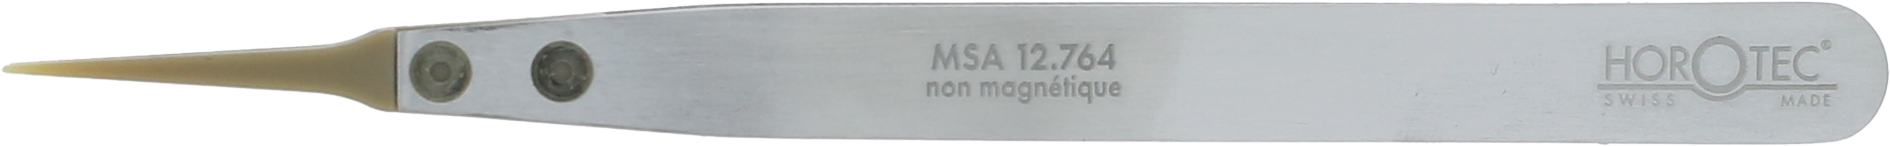 MSA12.764